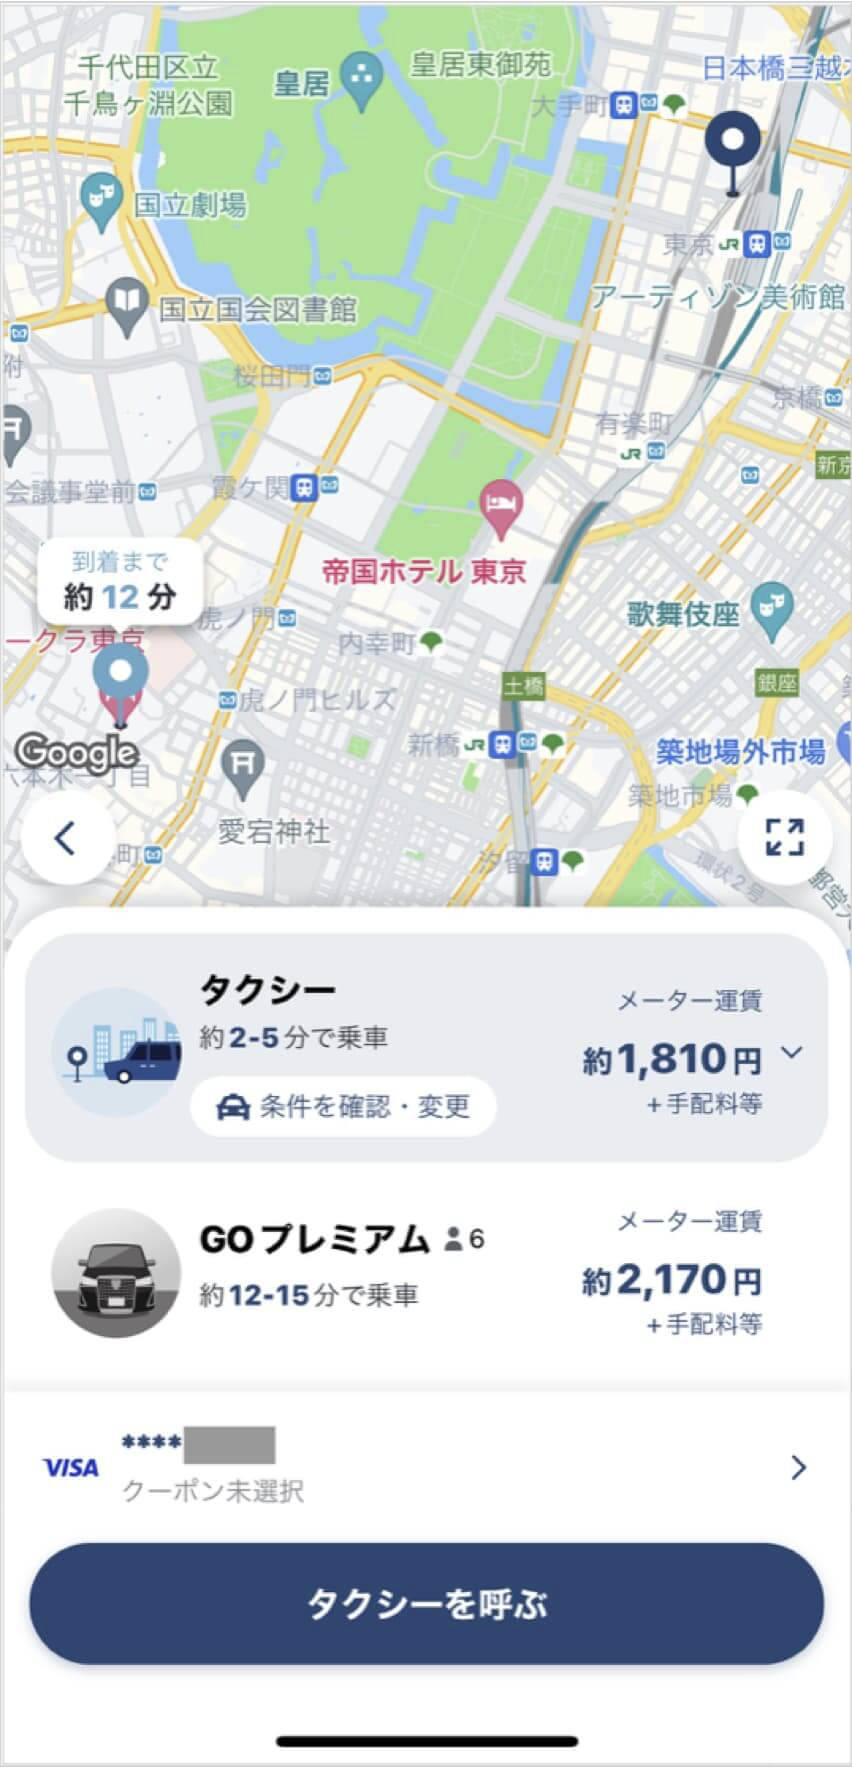 東京駅からホテルオークラまでのタクシー料金・所要時間まとめ